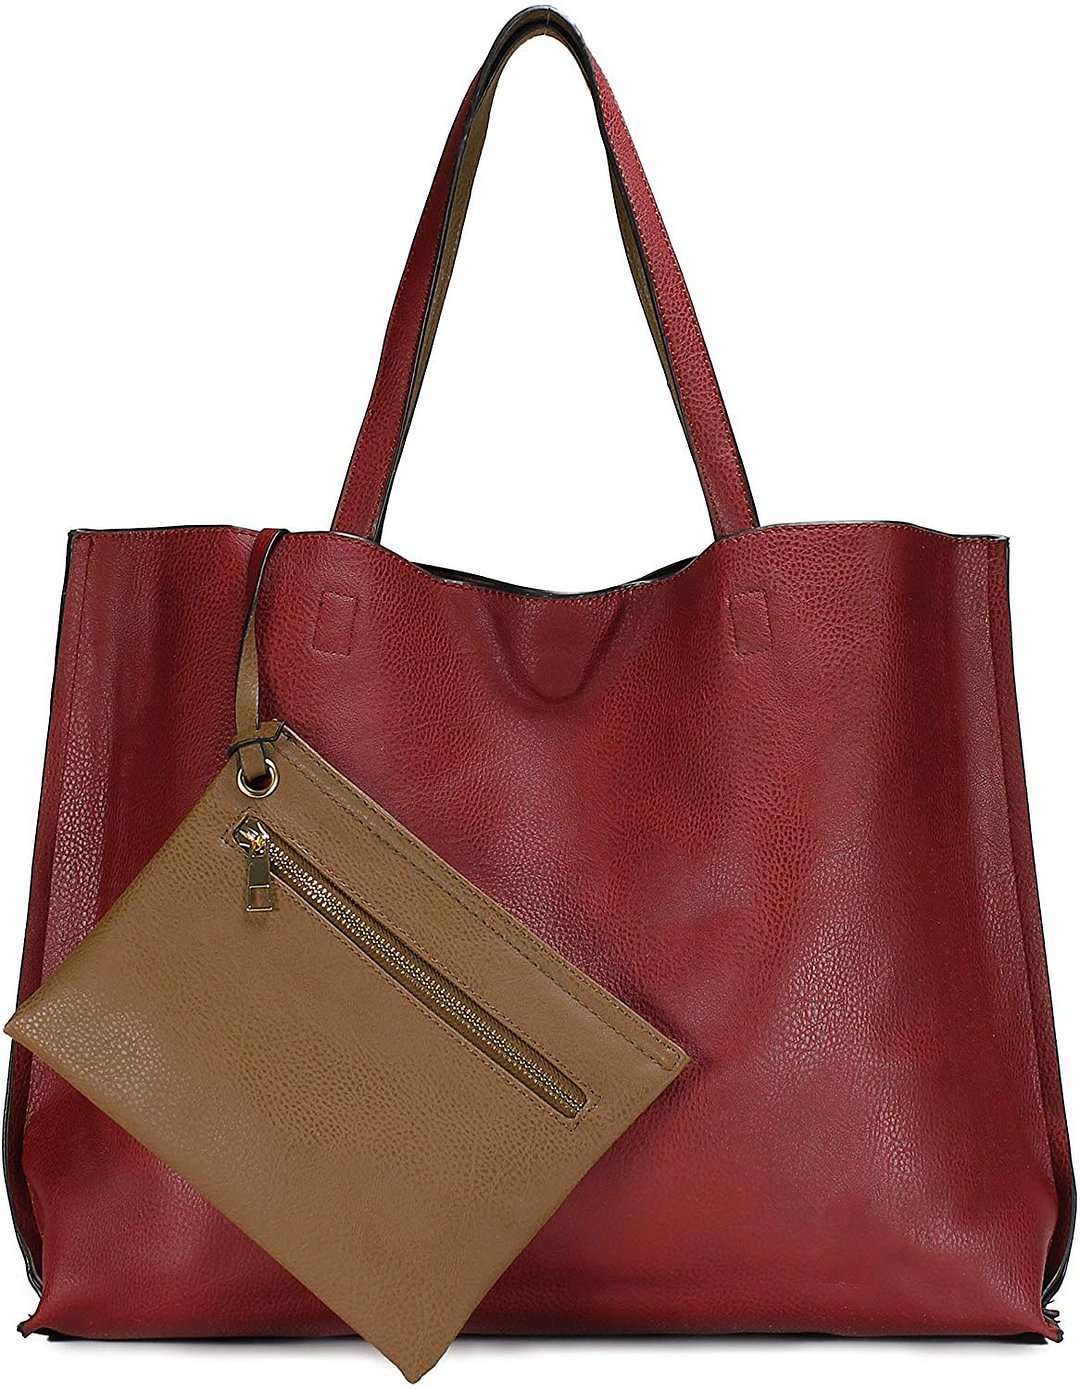 Stylish Reversible Tote Handbag for Women, Vegan Leather Shoulder Bag, Hobo bag, Satchel Purse